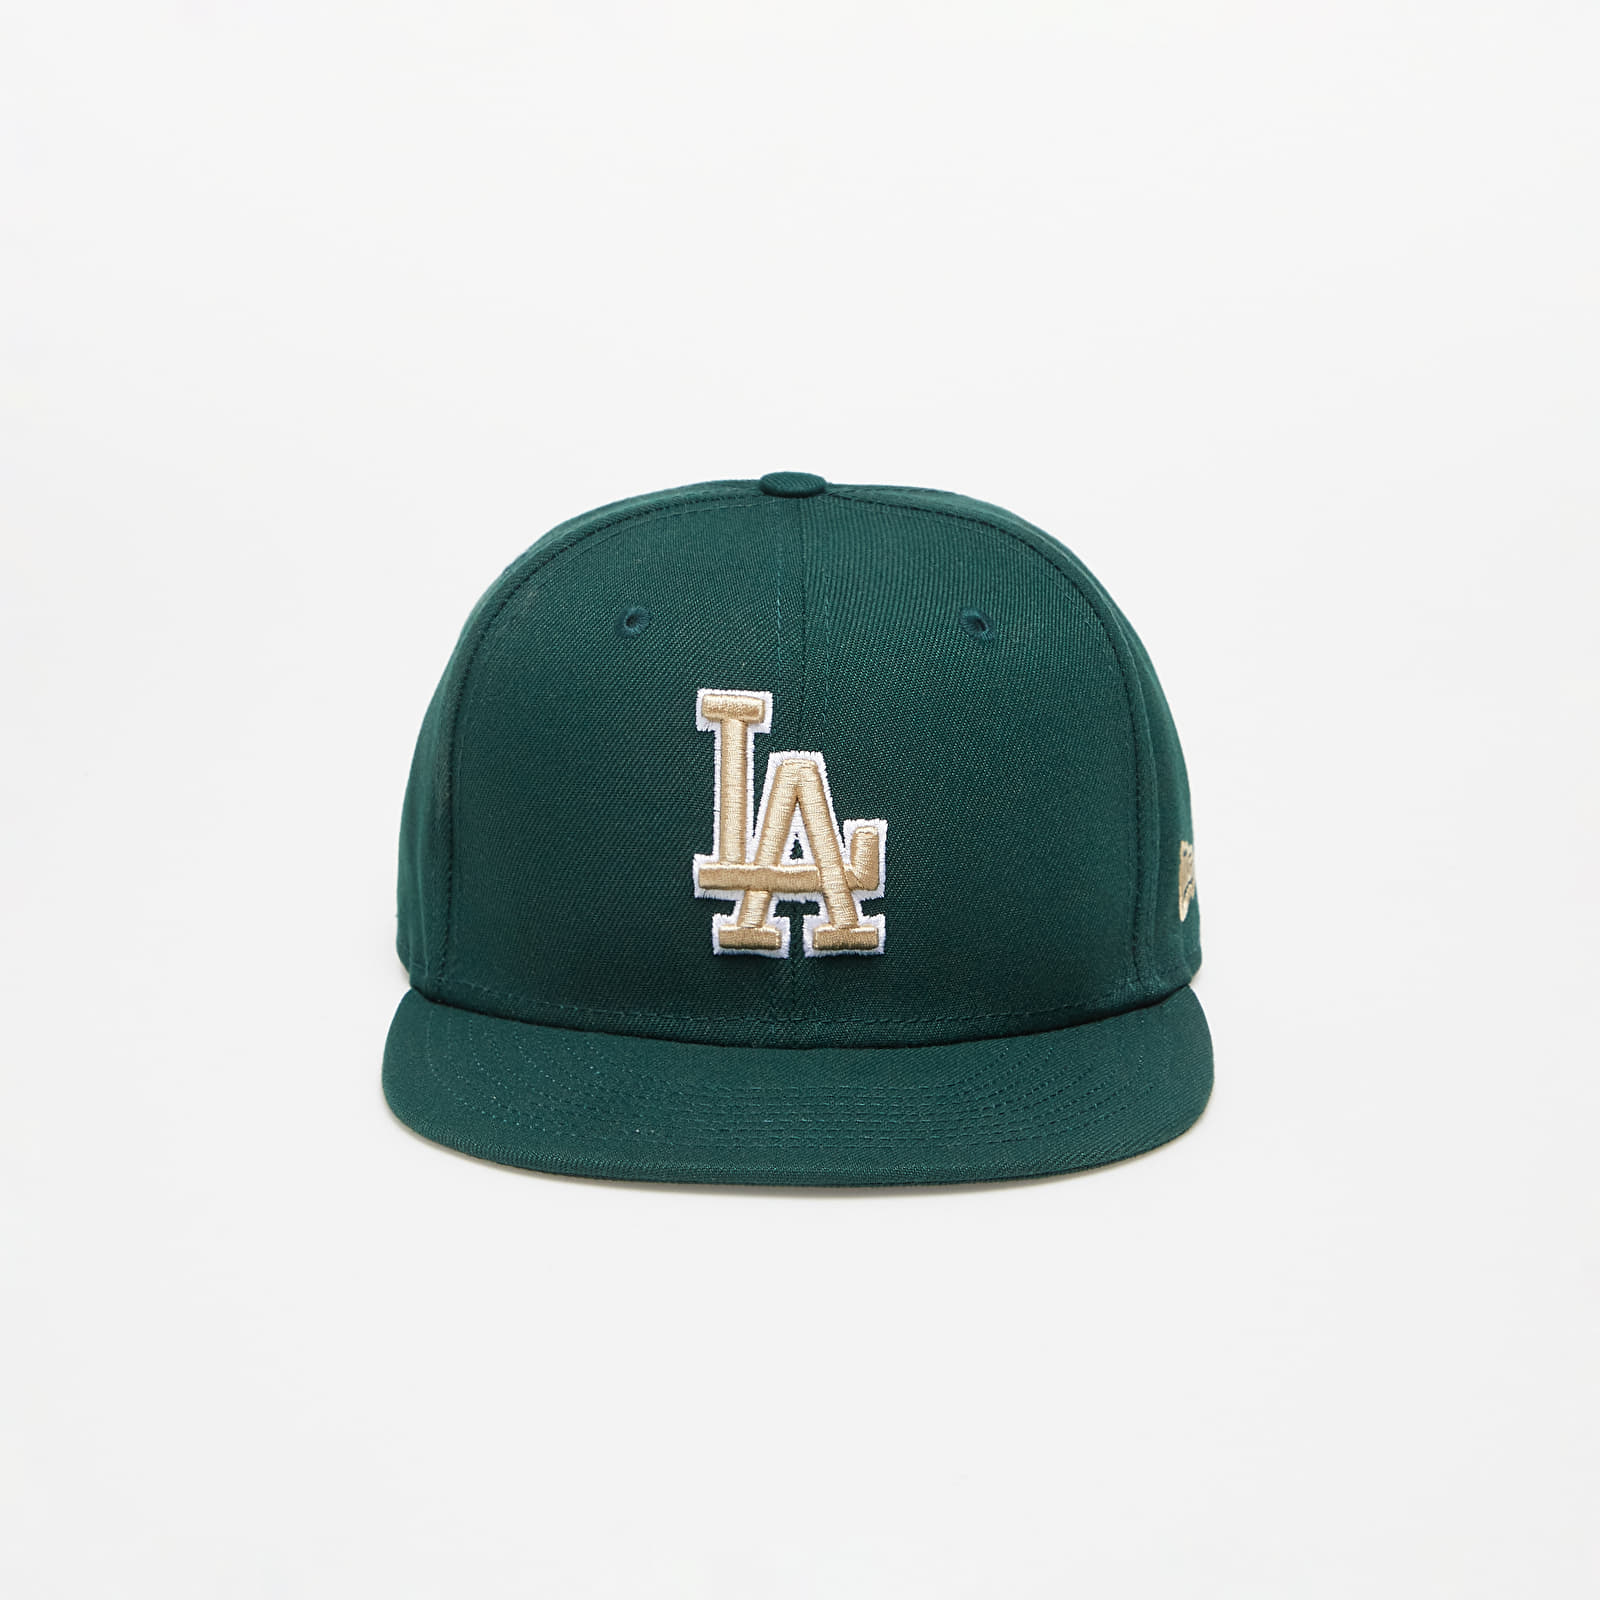 Caps New Era Los Angels Dodgers Repreve 9FIFTY Snapback Cap Dark Green